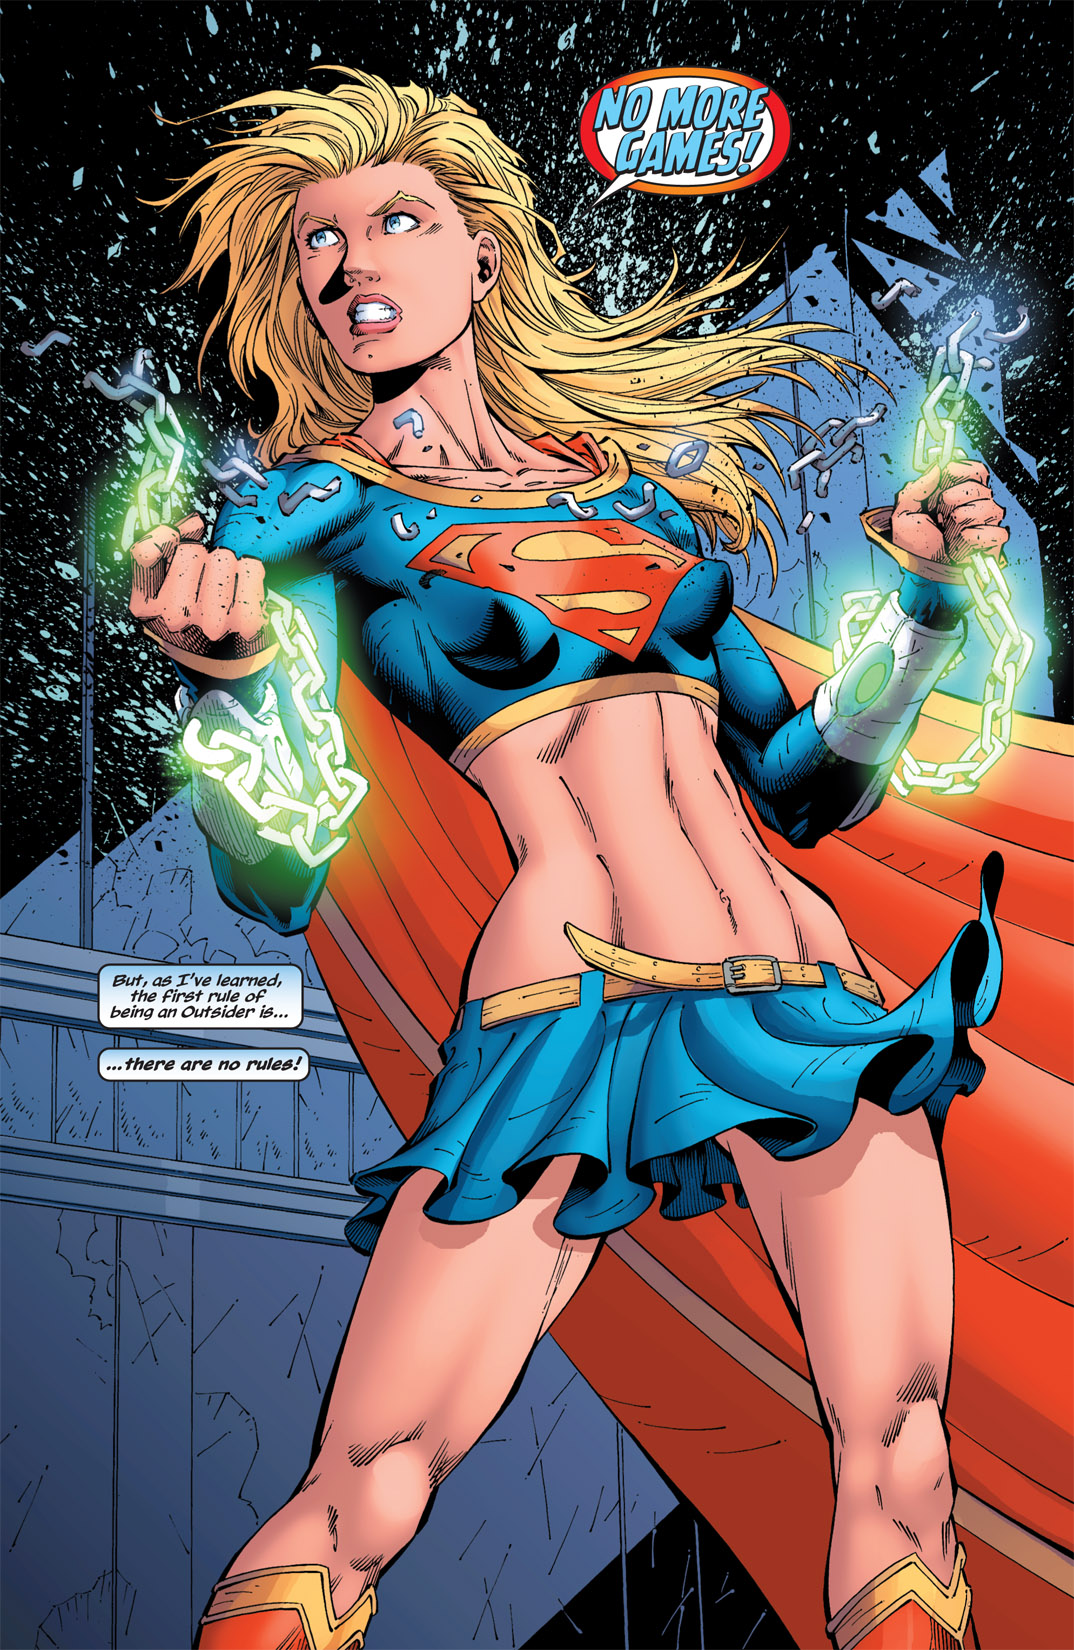 Concurso de Waifus: Menções Honrosas e Resultado Final! - Página 5 Supergirl-dc-comics